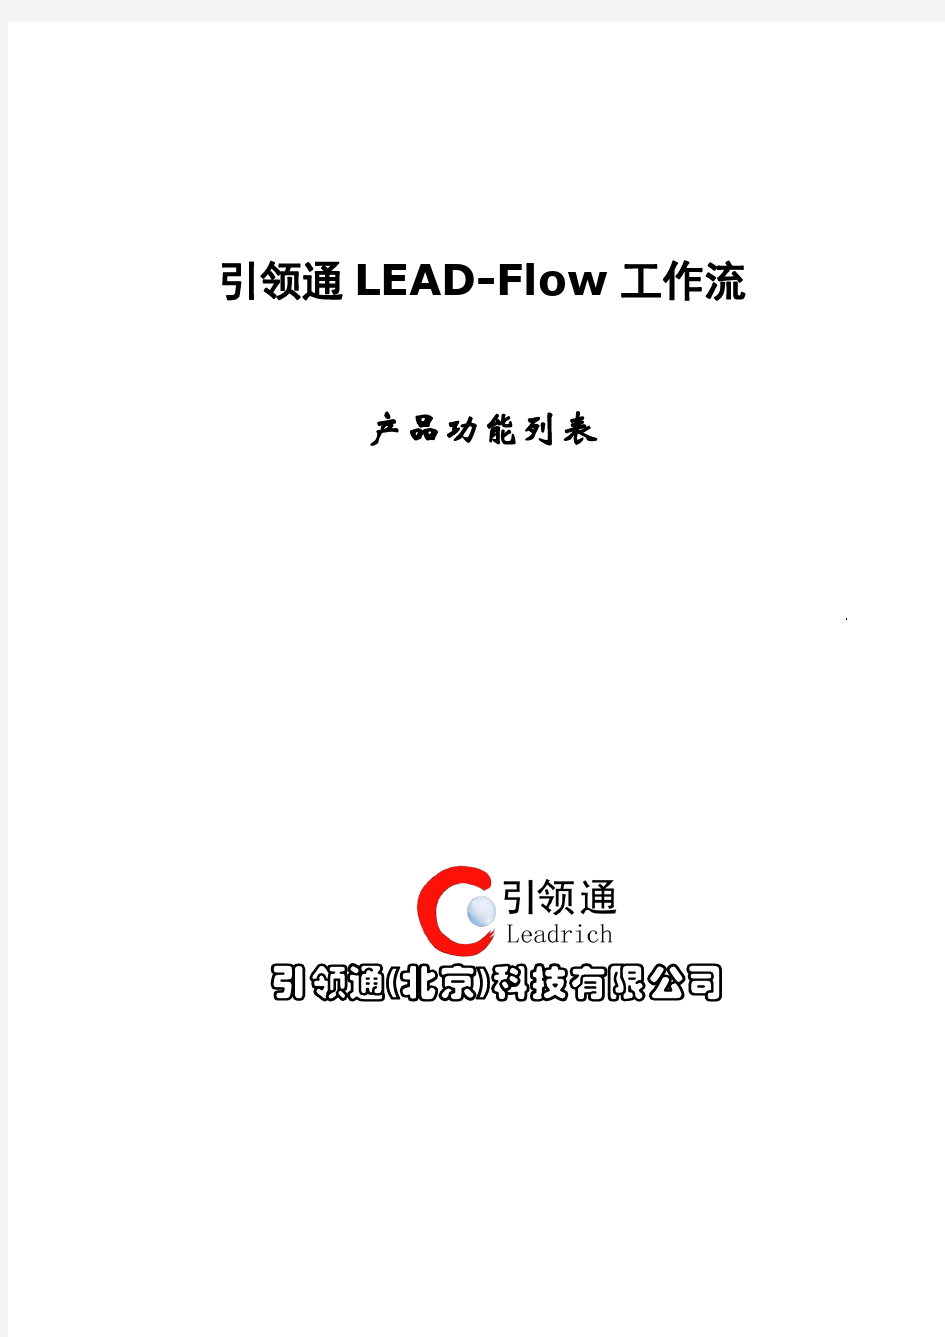 引领通LEAD-Flow工作流产品功能列表